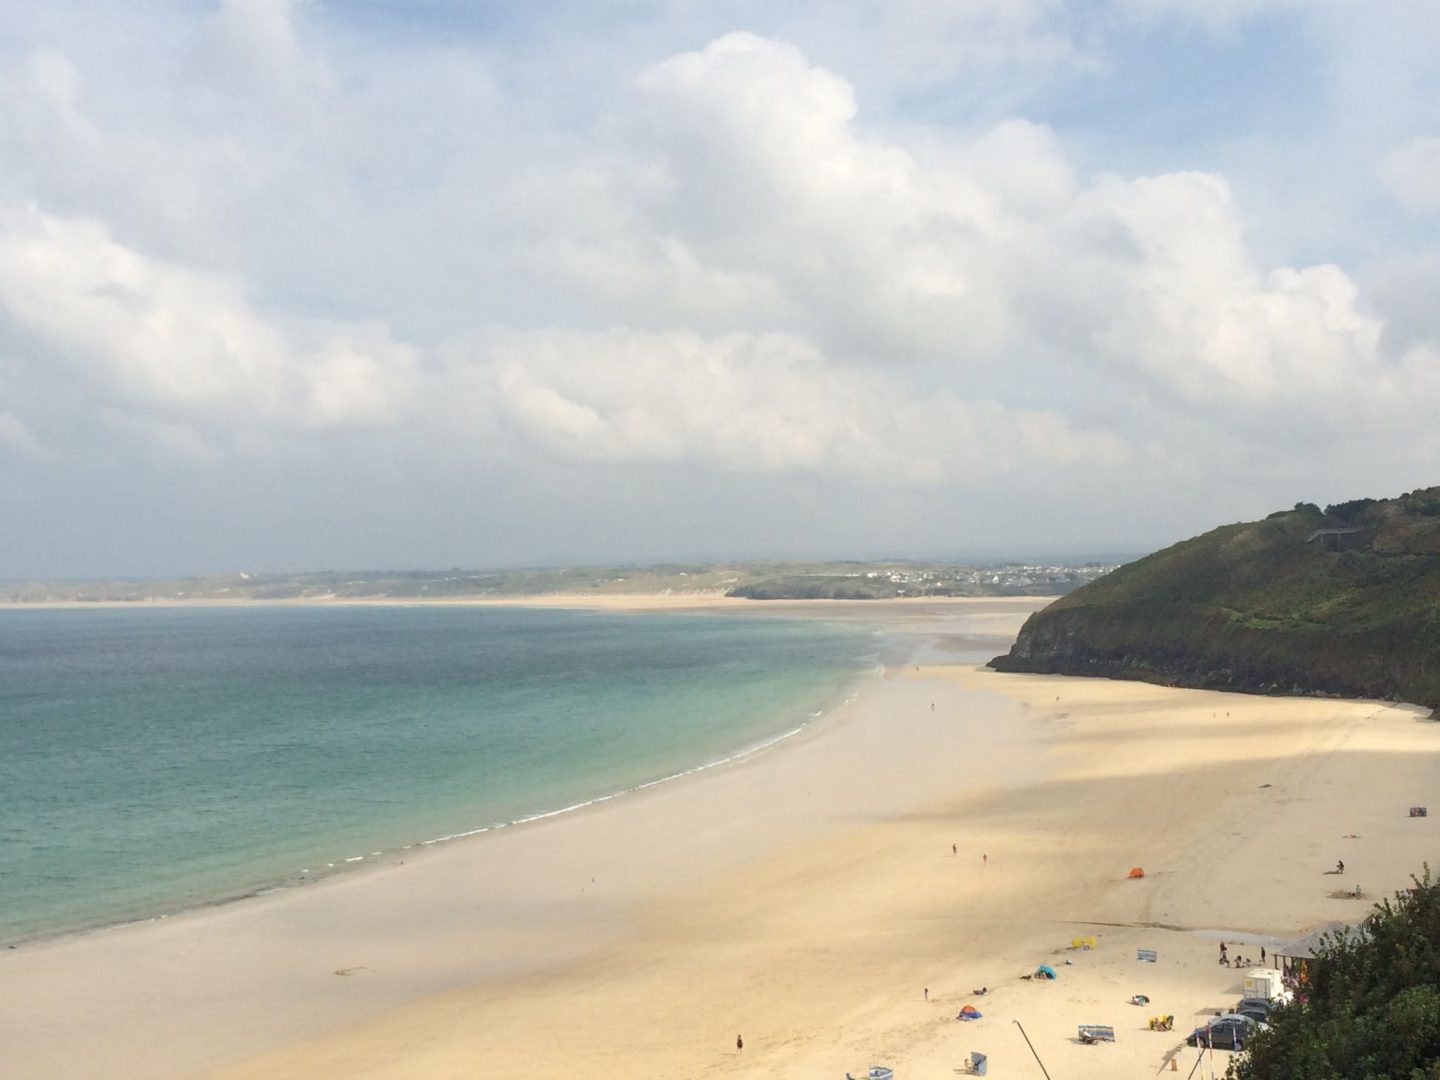 Views across Carbis Bay Beach, Cornwall